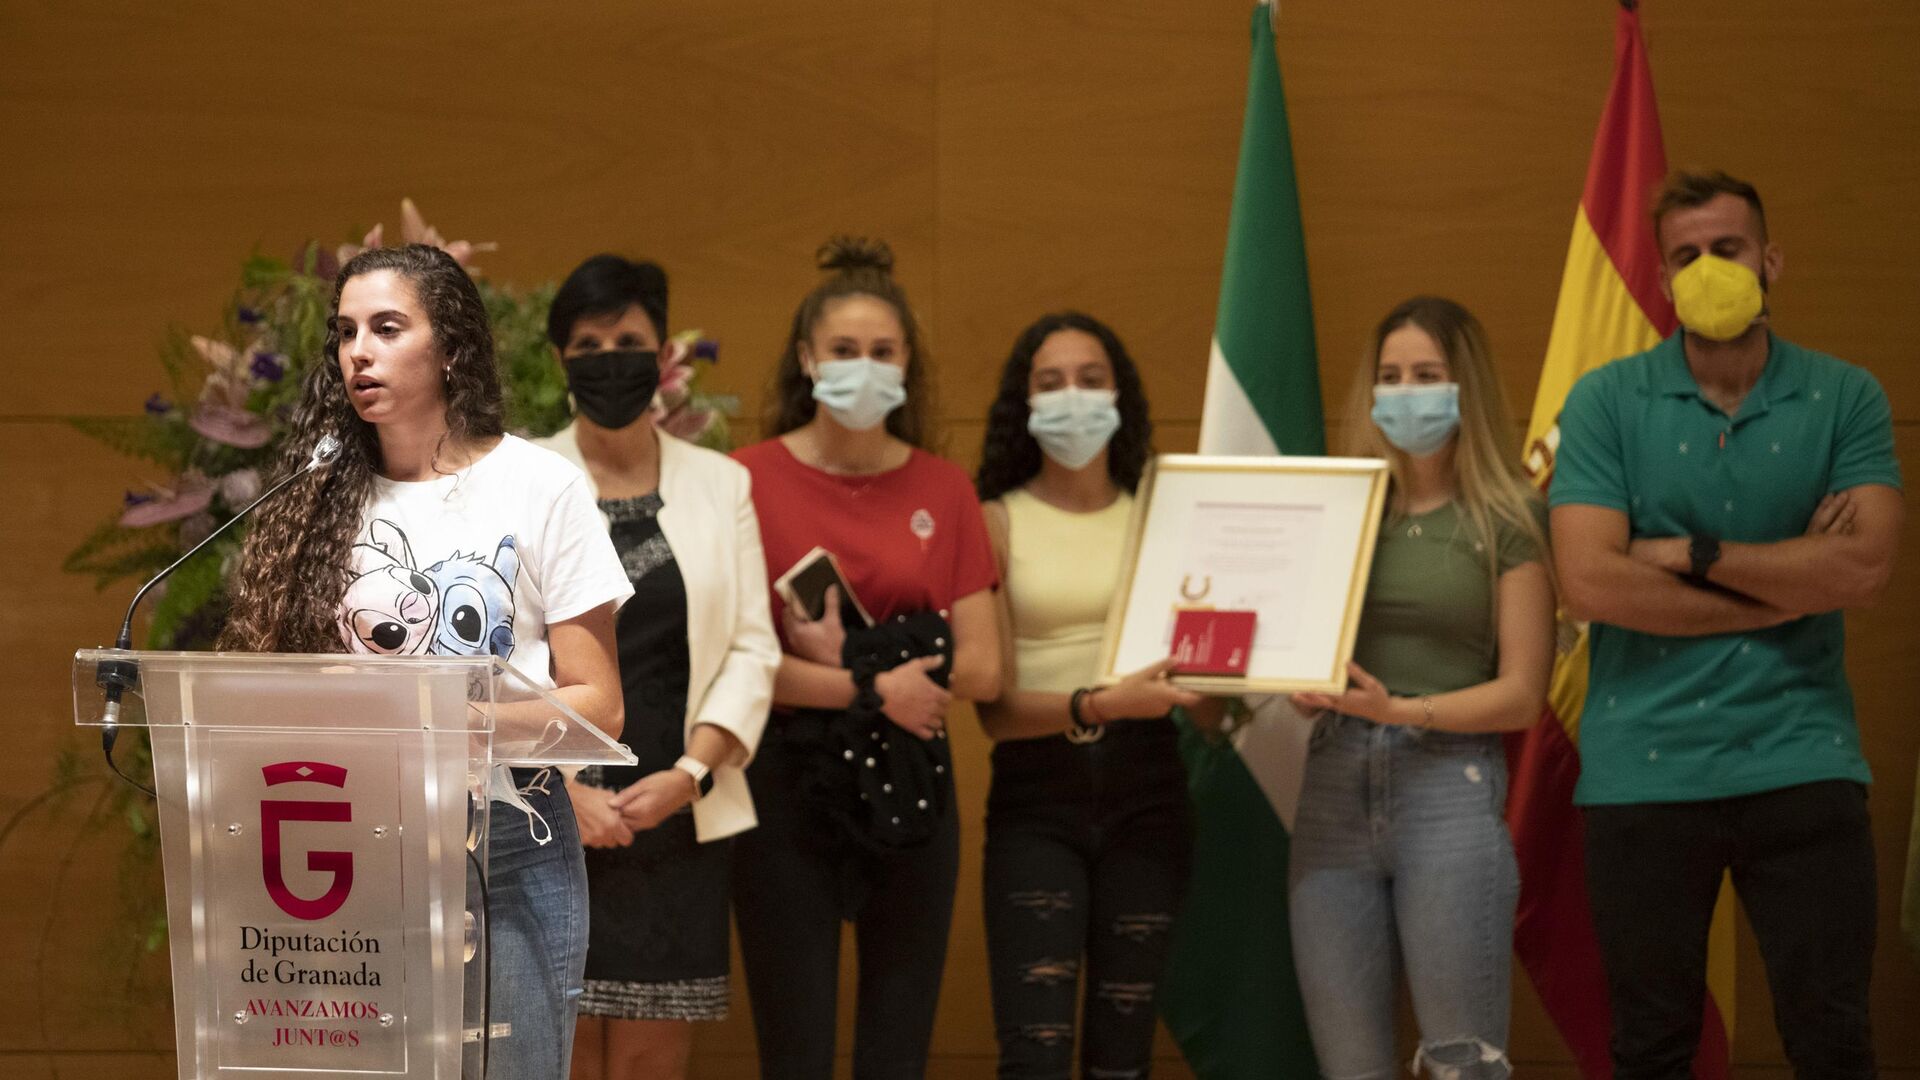 Fotos: los premiados por la Igualdad por la Diputaci&oacute;n de Granada